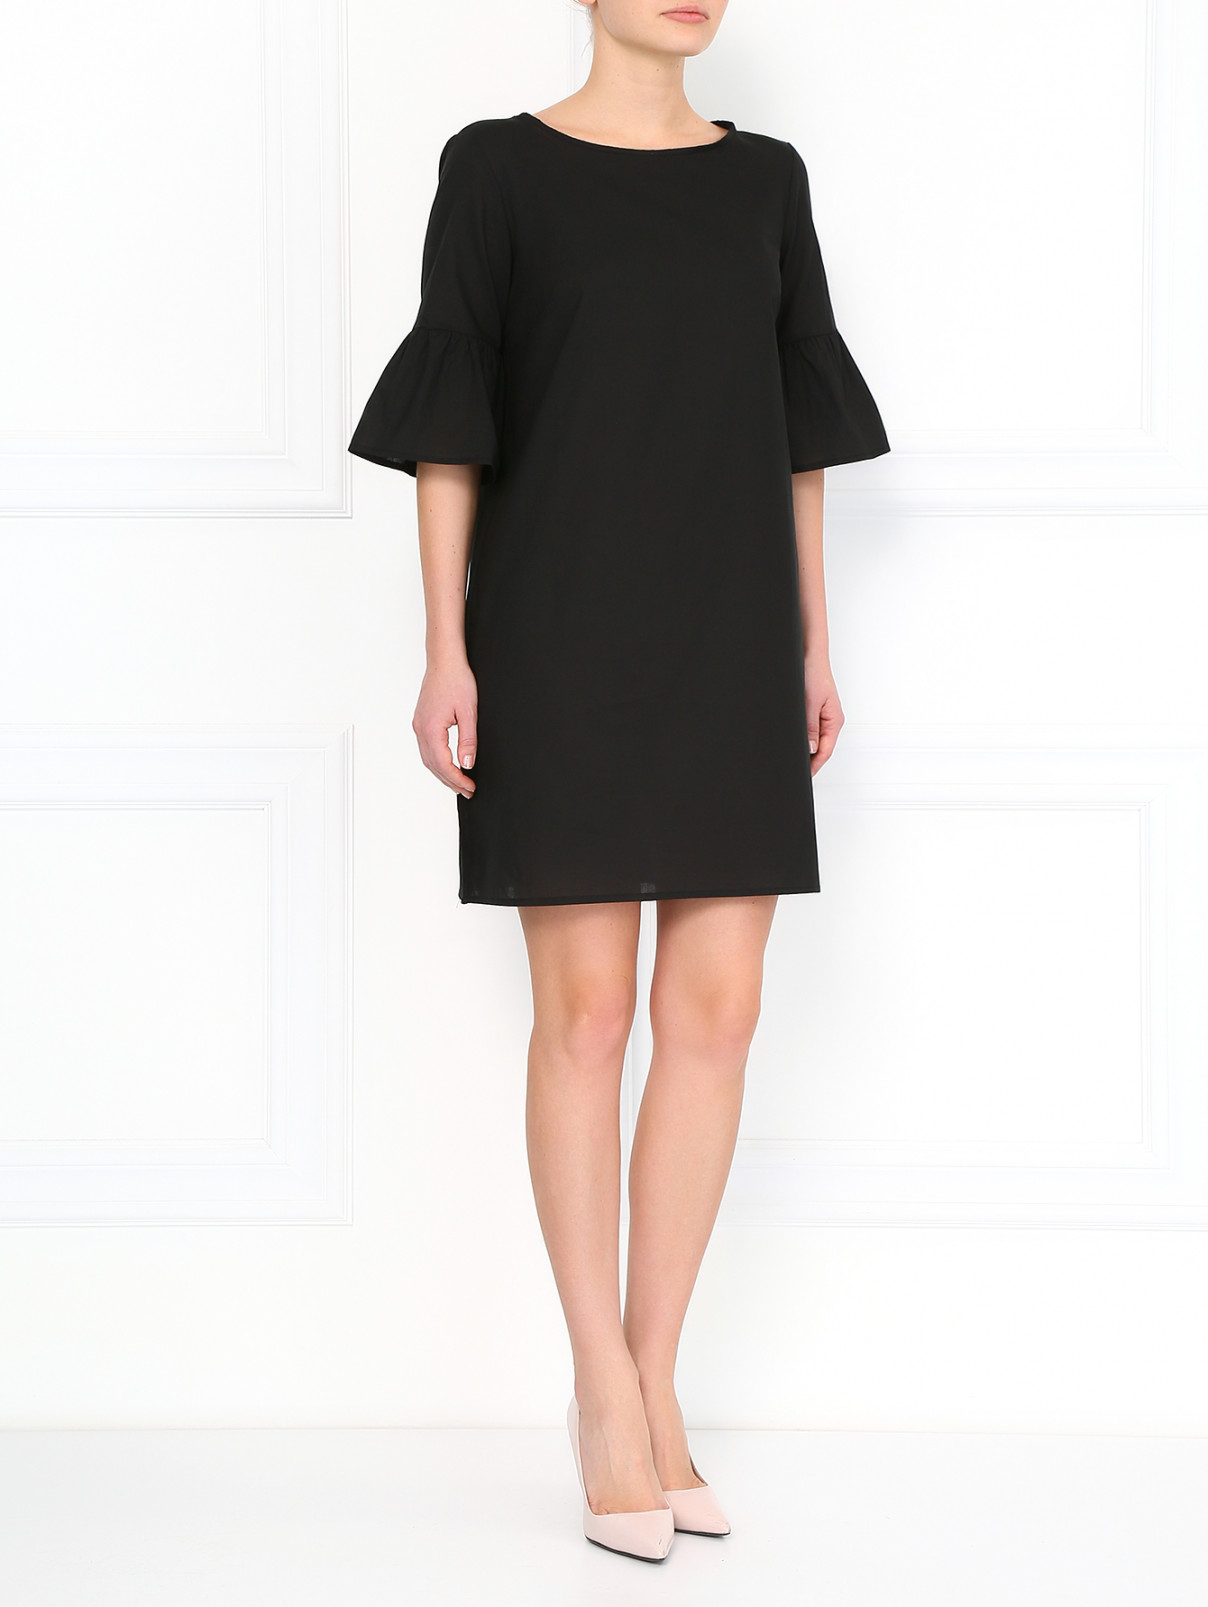 Платье из хлопка Vanda Catucci  –  Модель Общий вид  – Цвет:  Черный